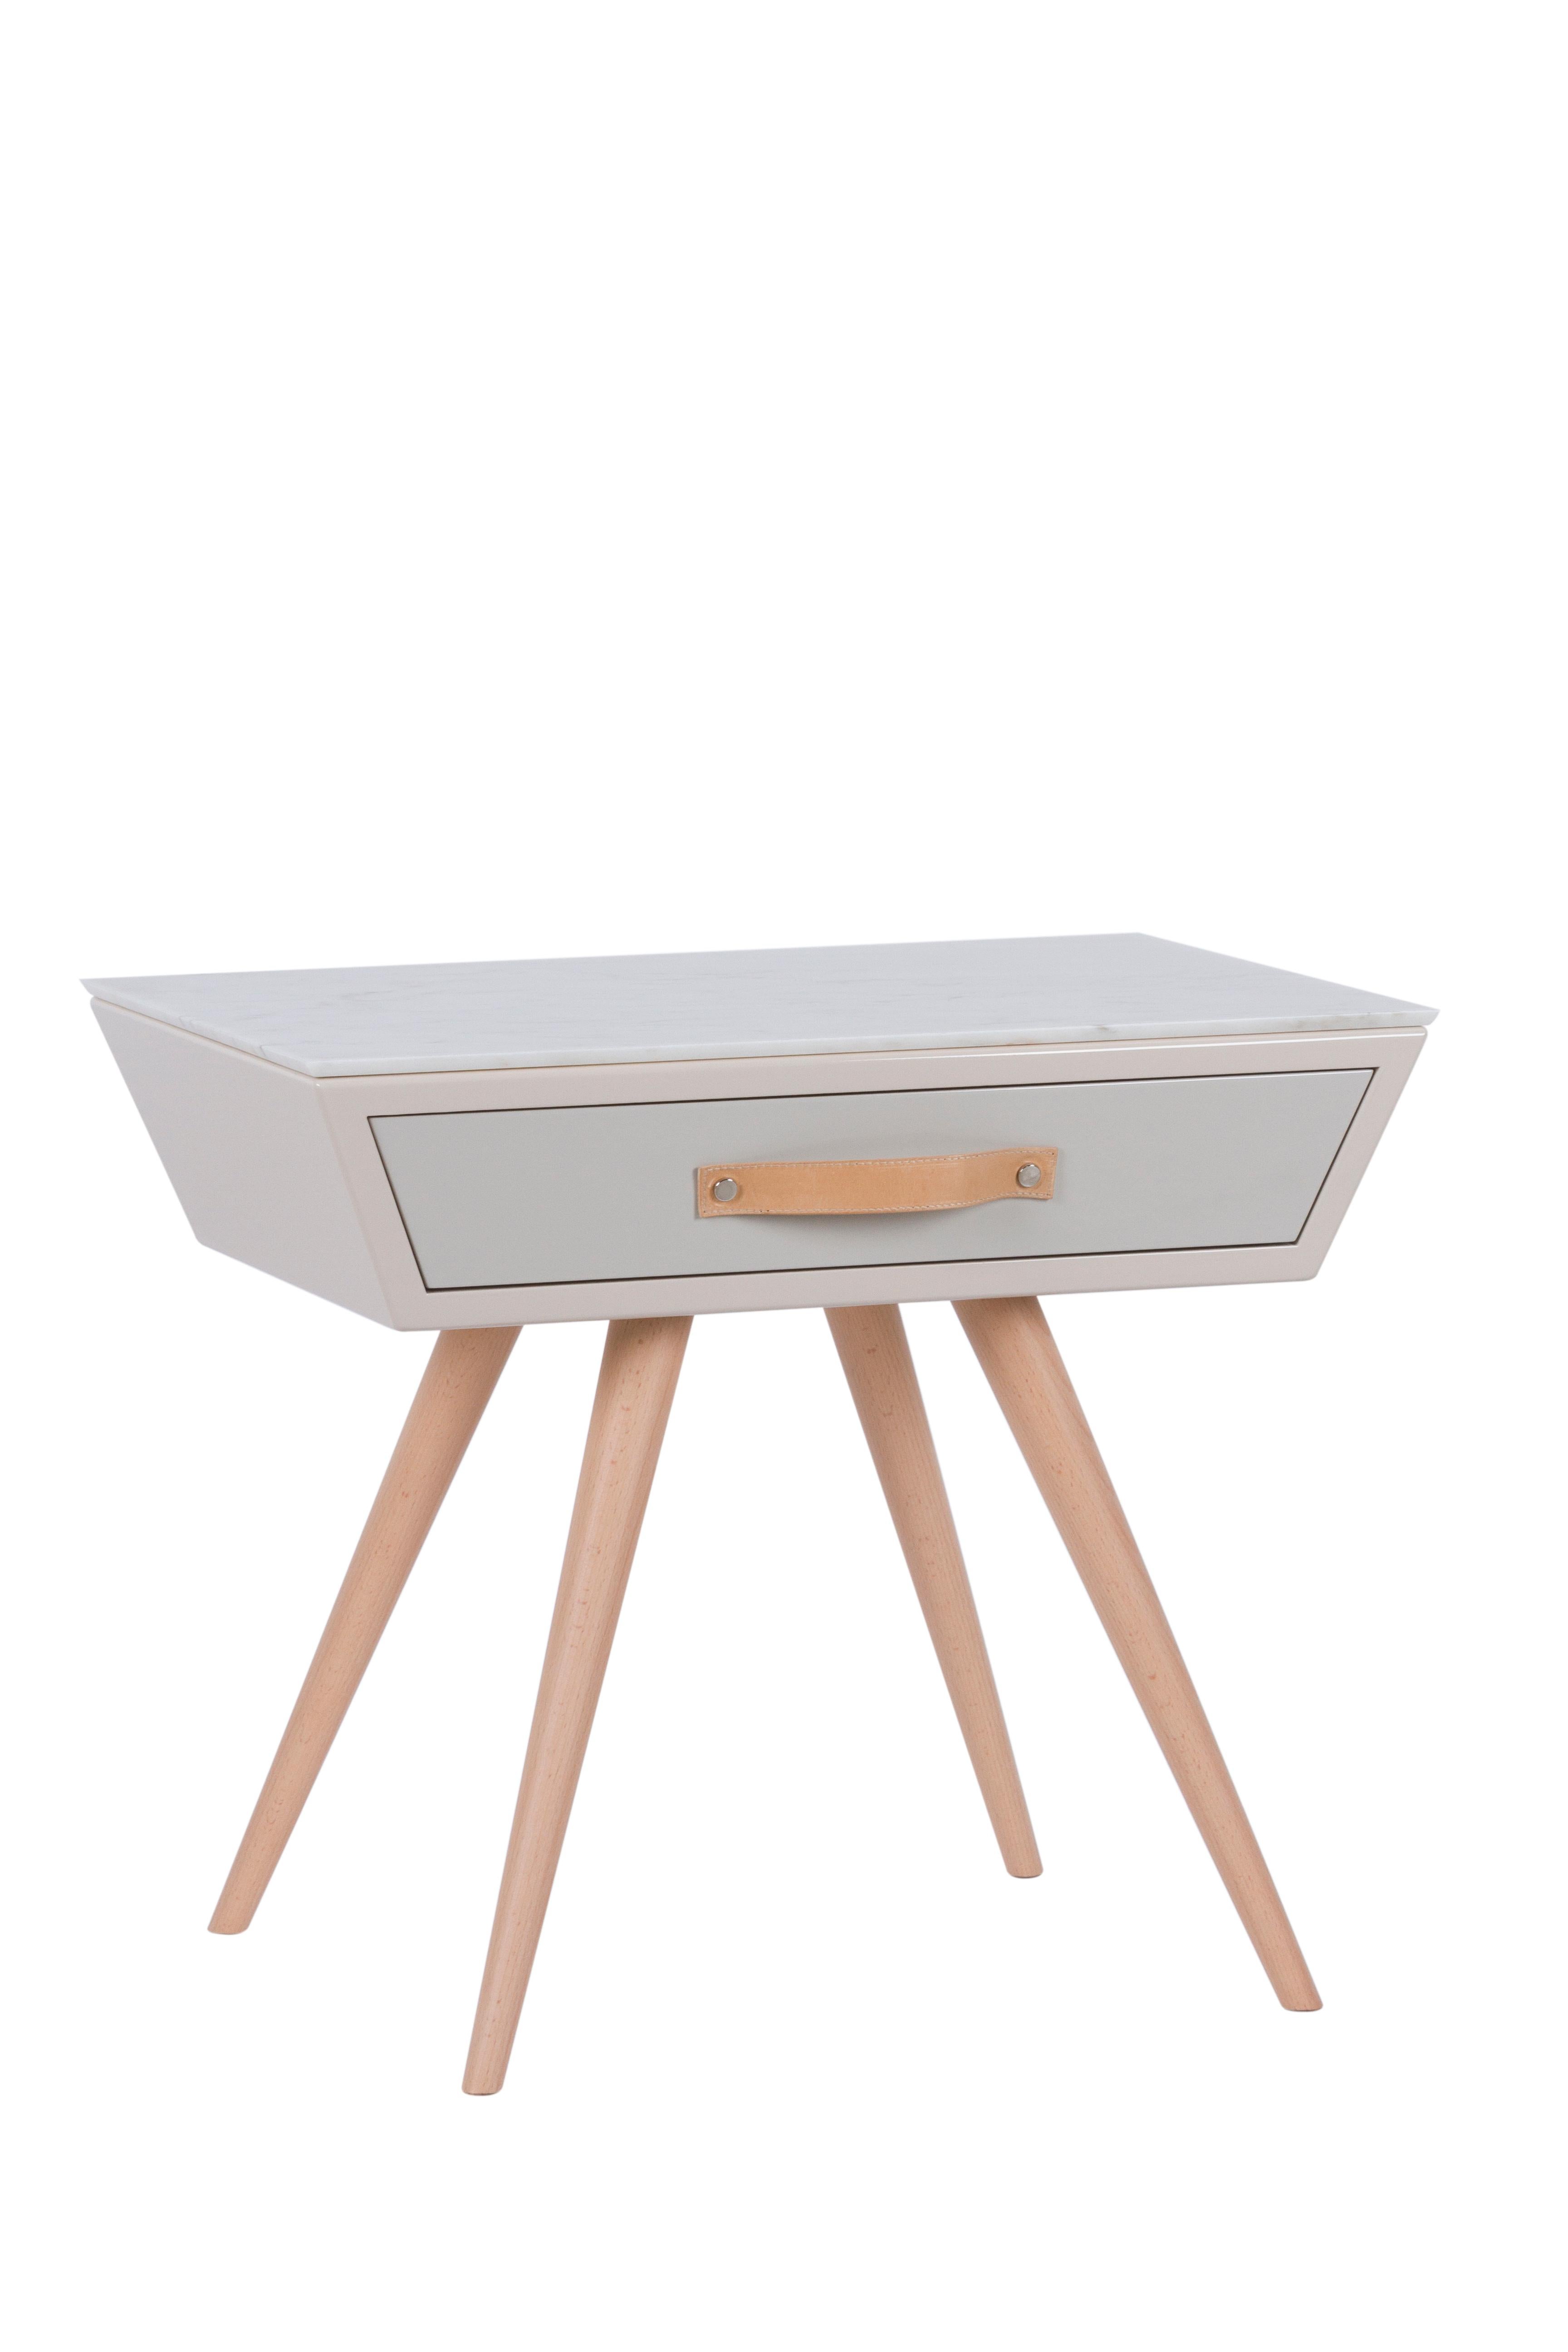 Table de nuit Sopro, Collection S, fabriquée à la main au Portugal - Europe par GF Modern.

La table de nuit Sopro offre un design intemporel à votre espace de vie. Sopro est une table de chevet en bois avec un tiroir laqué en beige et gris clair,